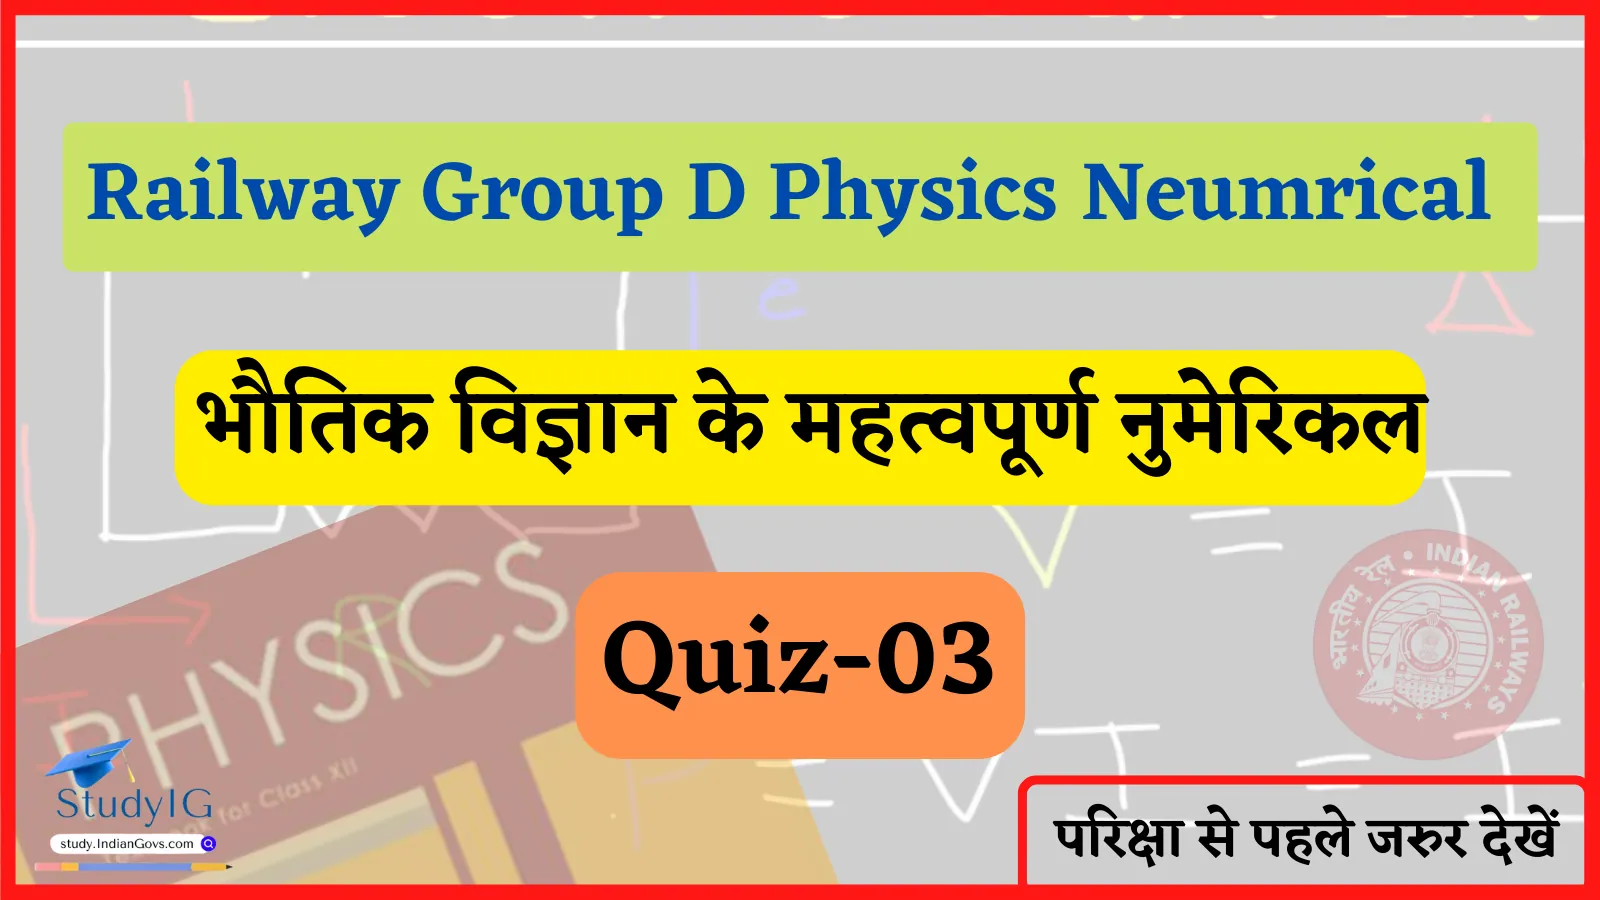 Railway Group D Physics Numerical Quiz- 03